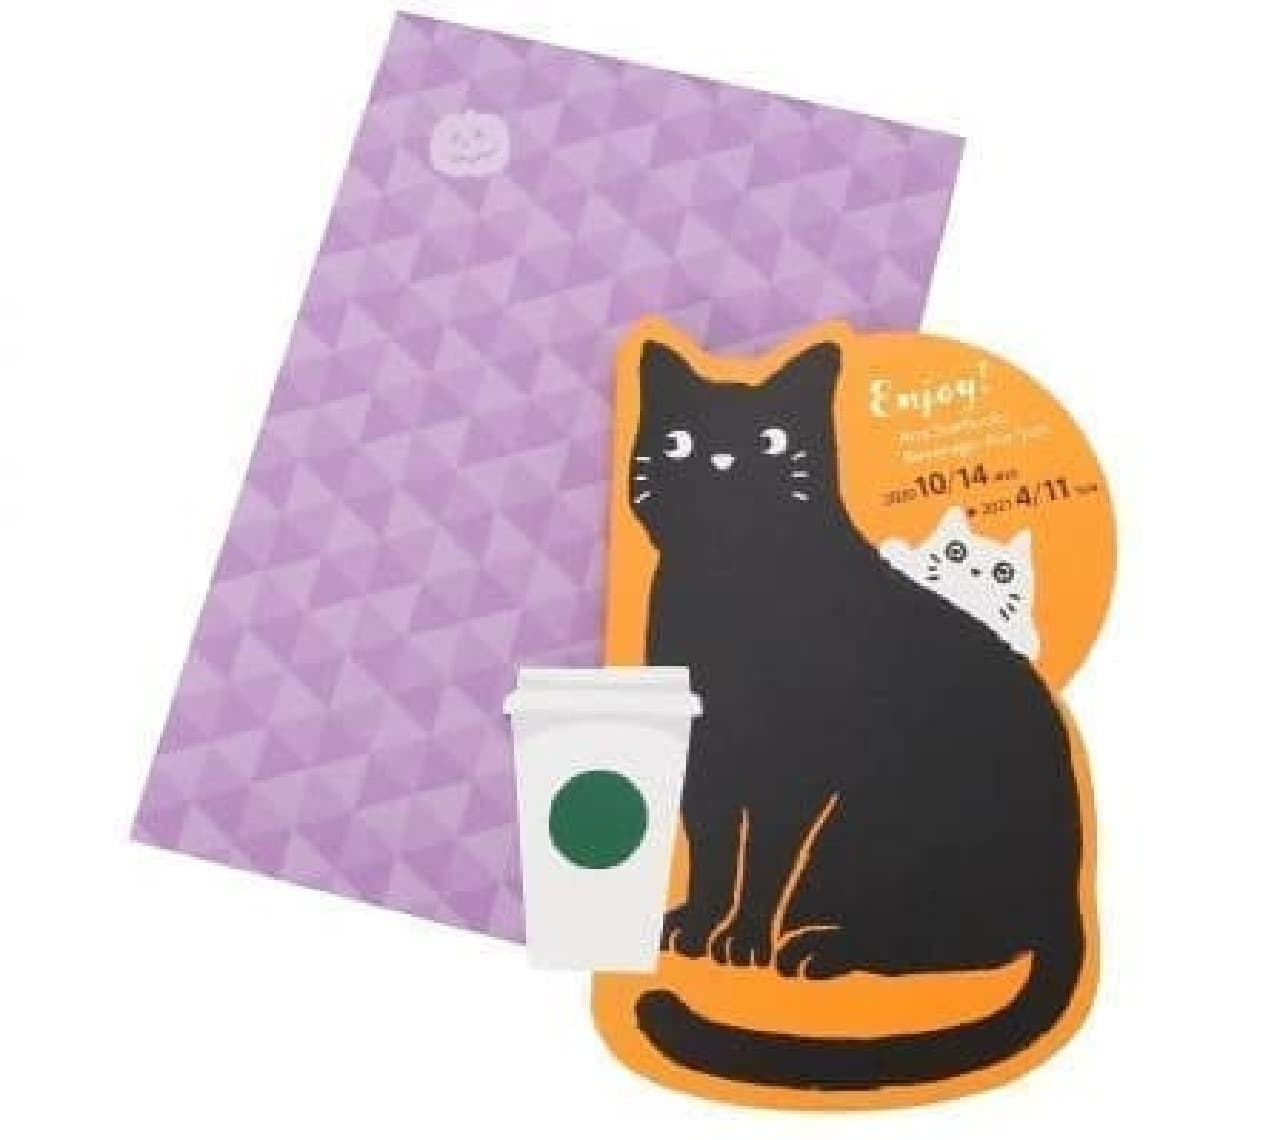 Starbucks "Halloween 2020 Beverage Card Cats"